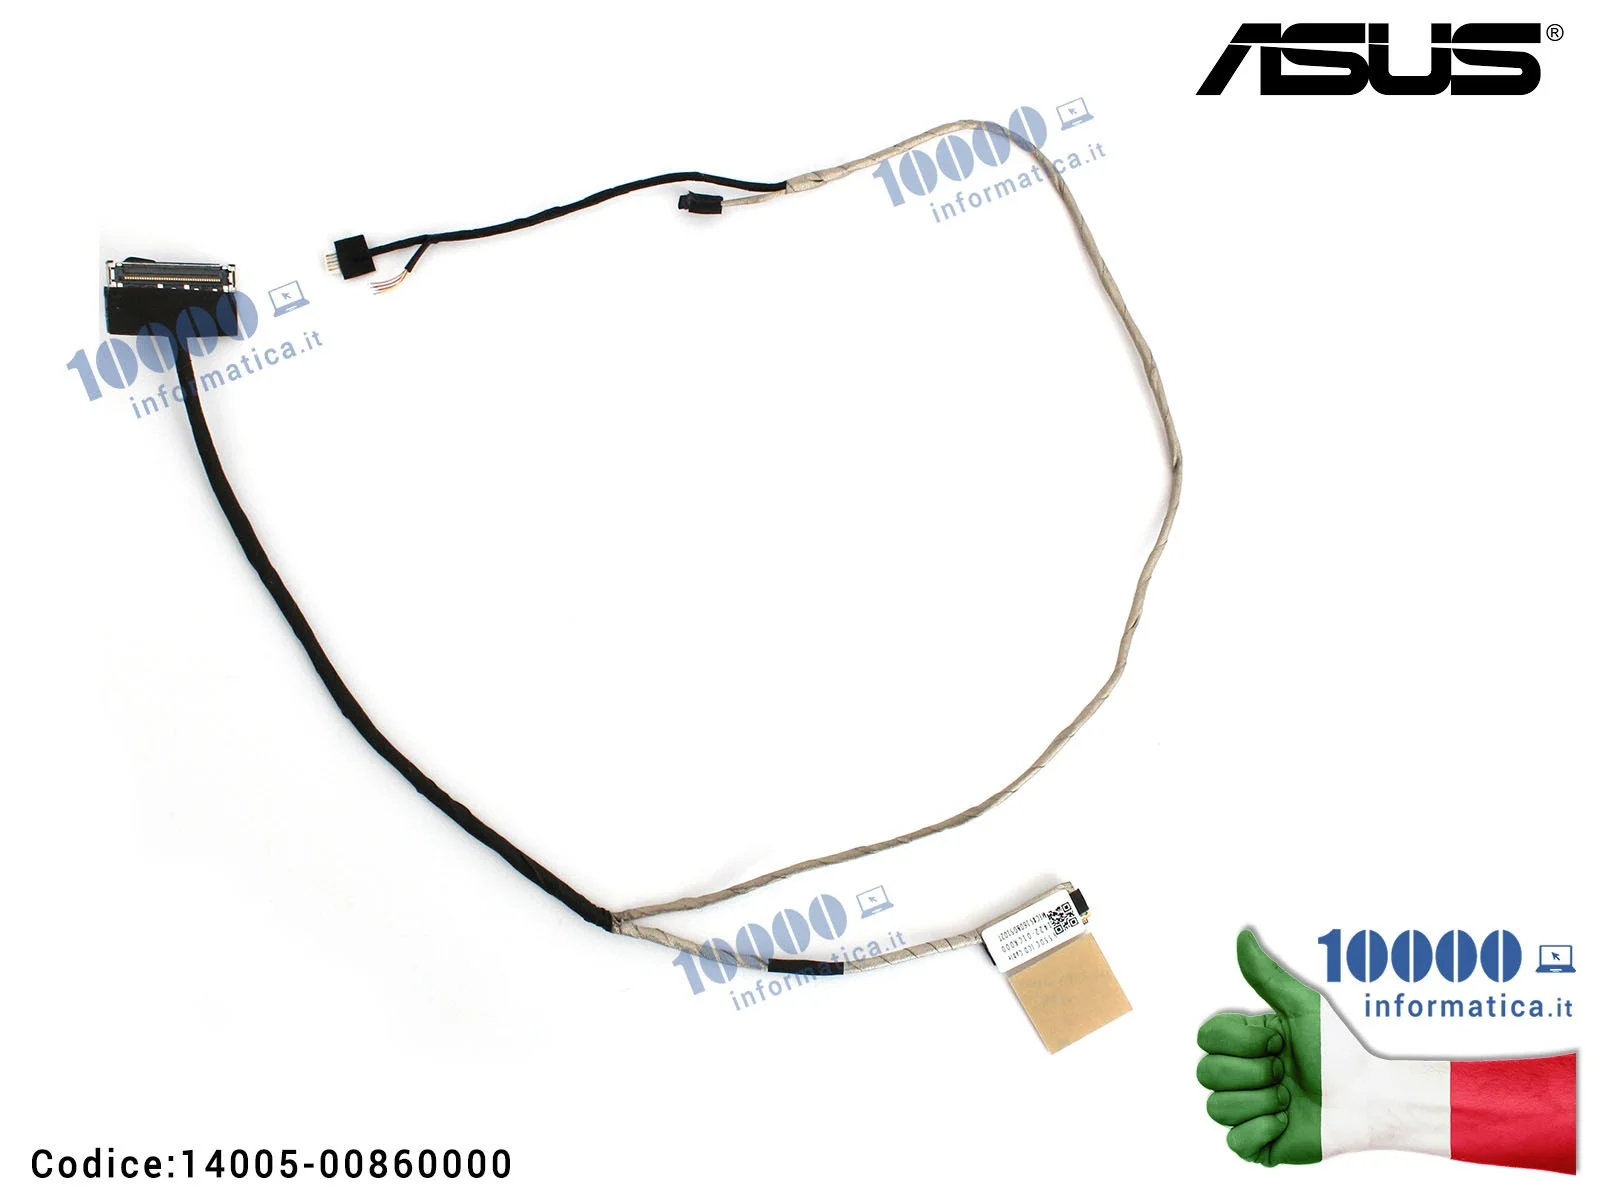 14005-00860000 Cavo Flat LCD ASUS VivoBook S550 S550C S550CA S550CM V550C V505CA S550CB S550X 1422-01CR000 [NO MICROFONO] 140...